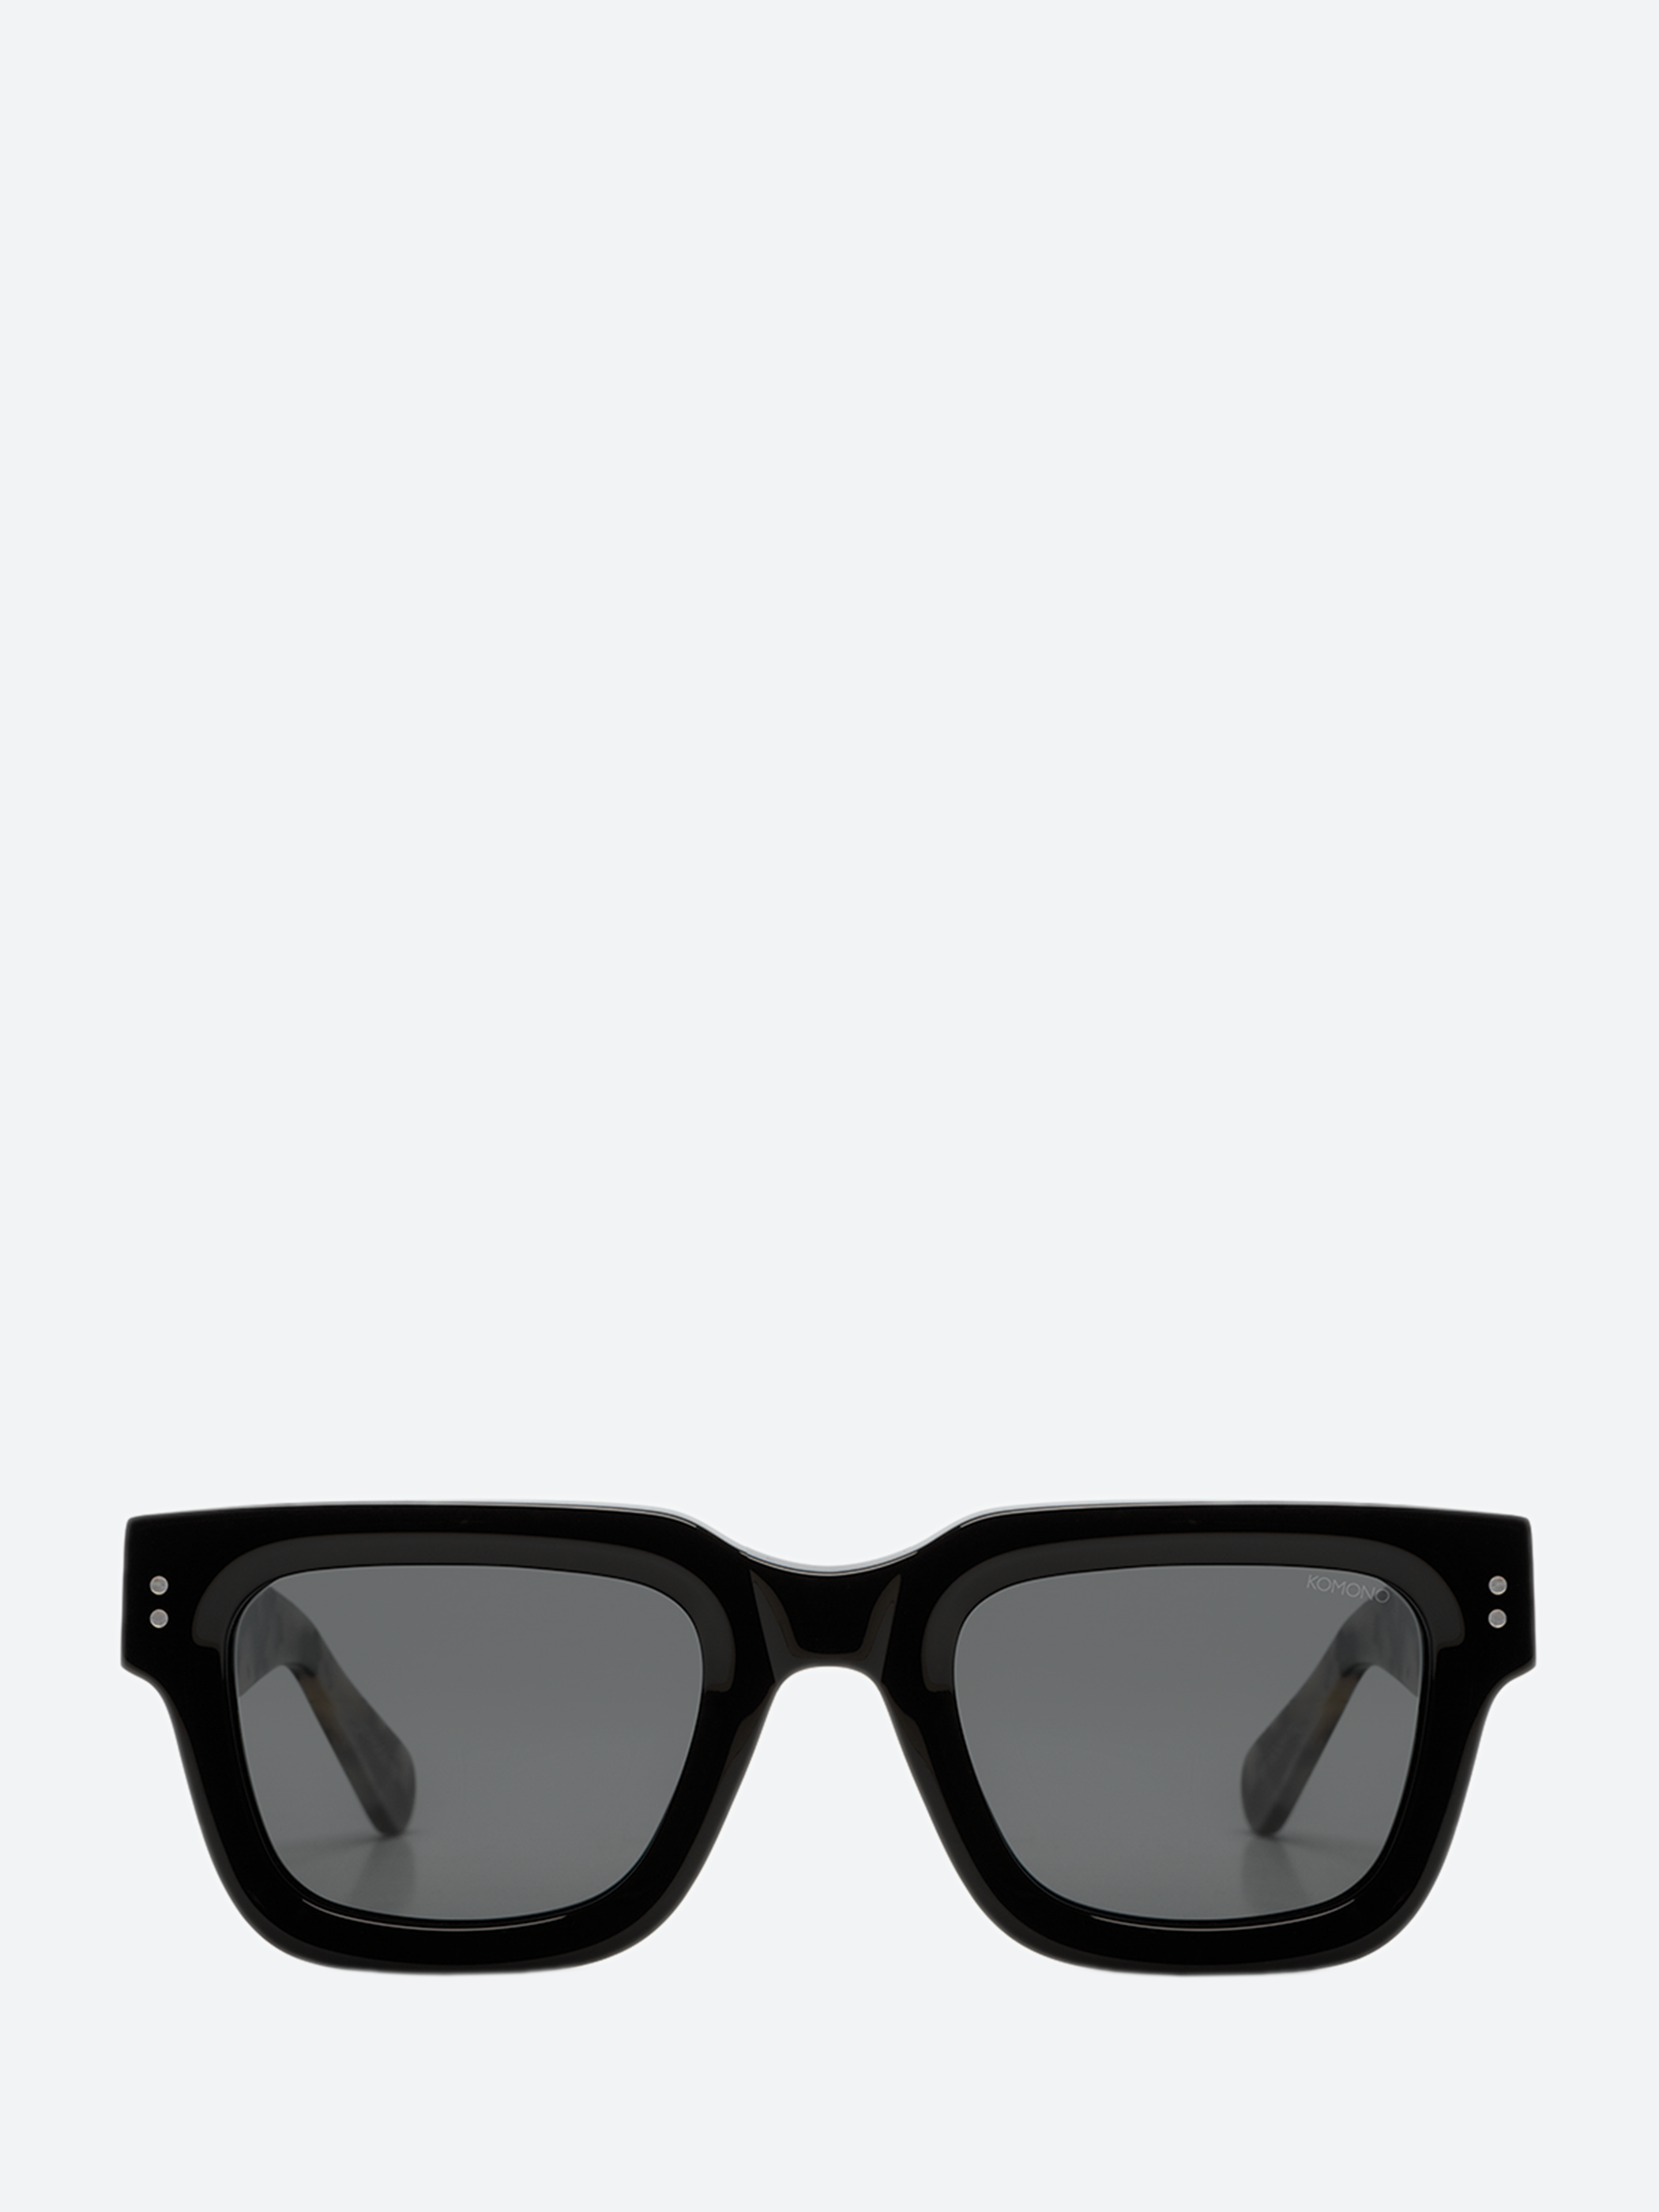 Hioco 73 Sunglasses